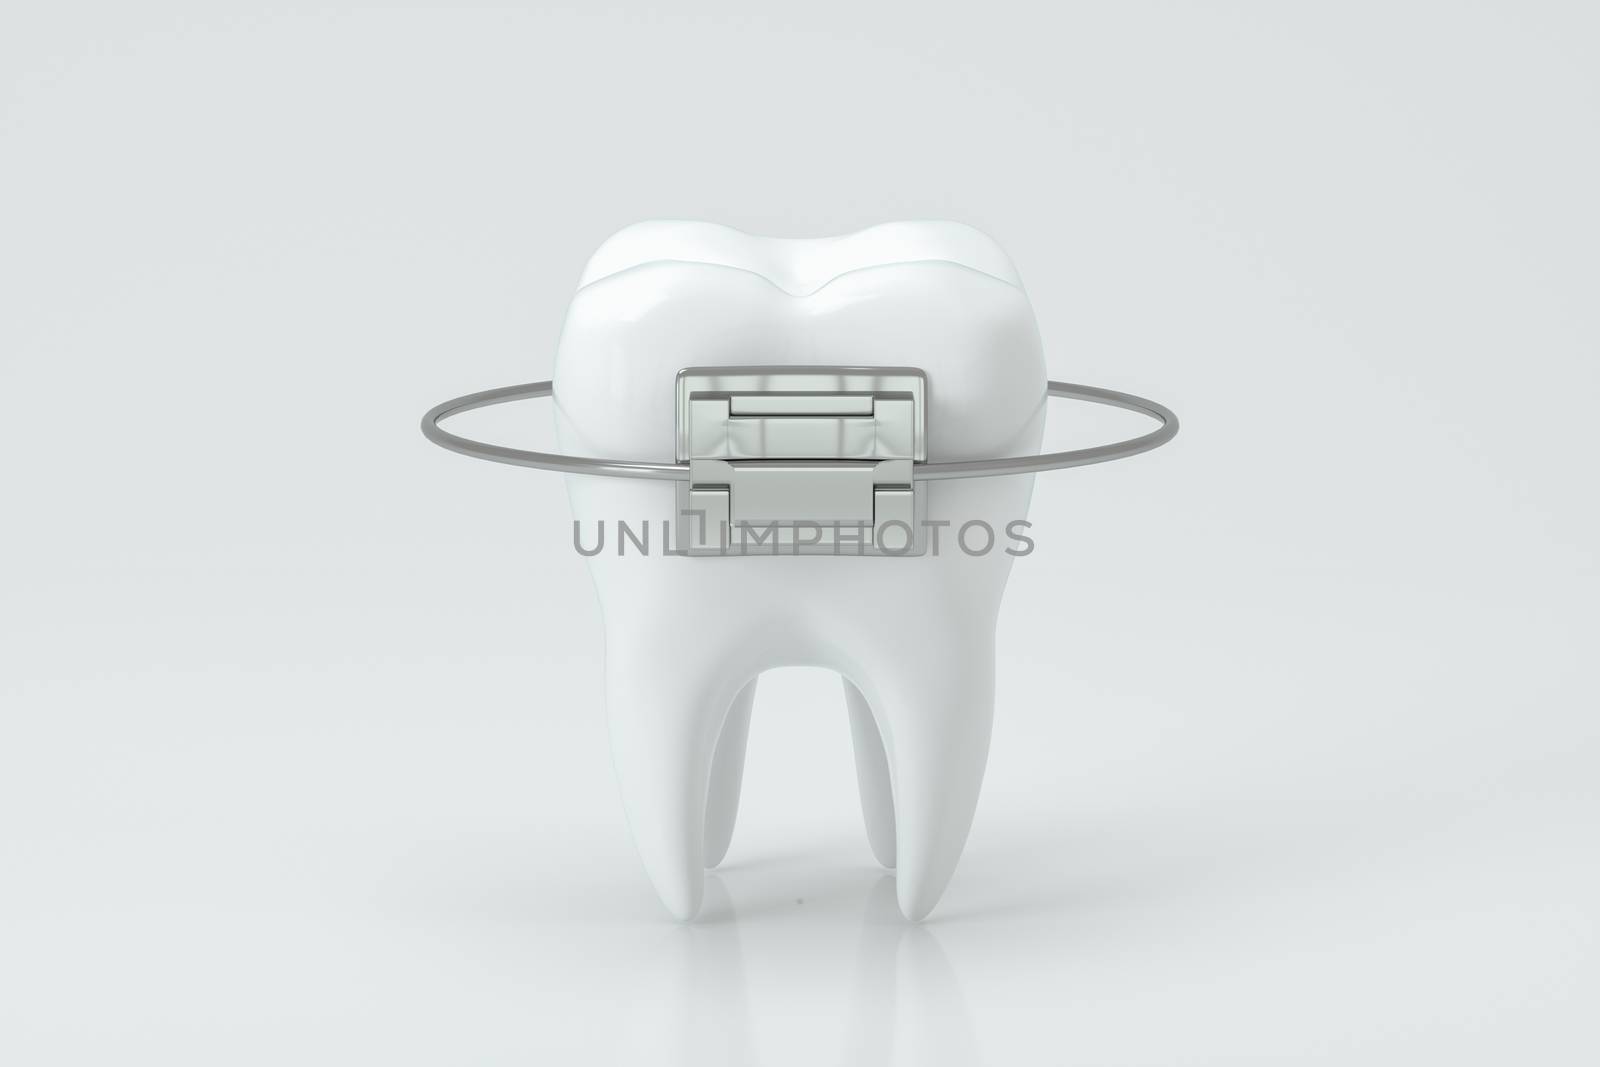 Dental braces and the teeth, 3d rendering. Computer digital drawing.